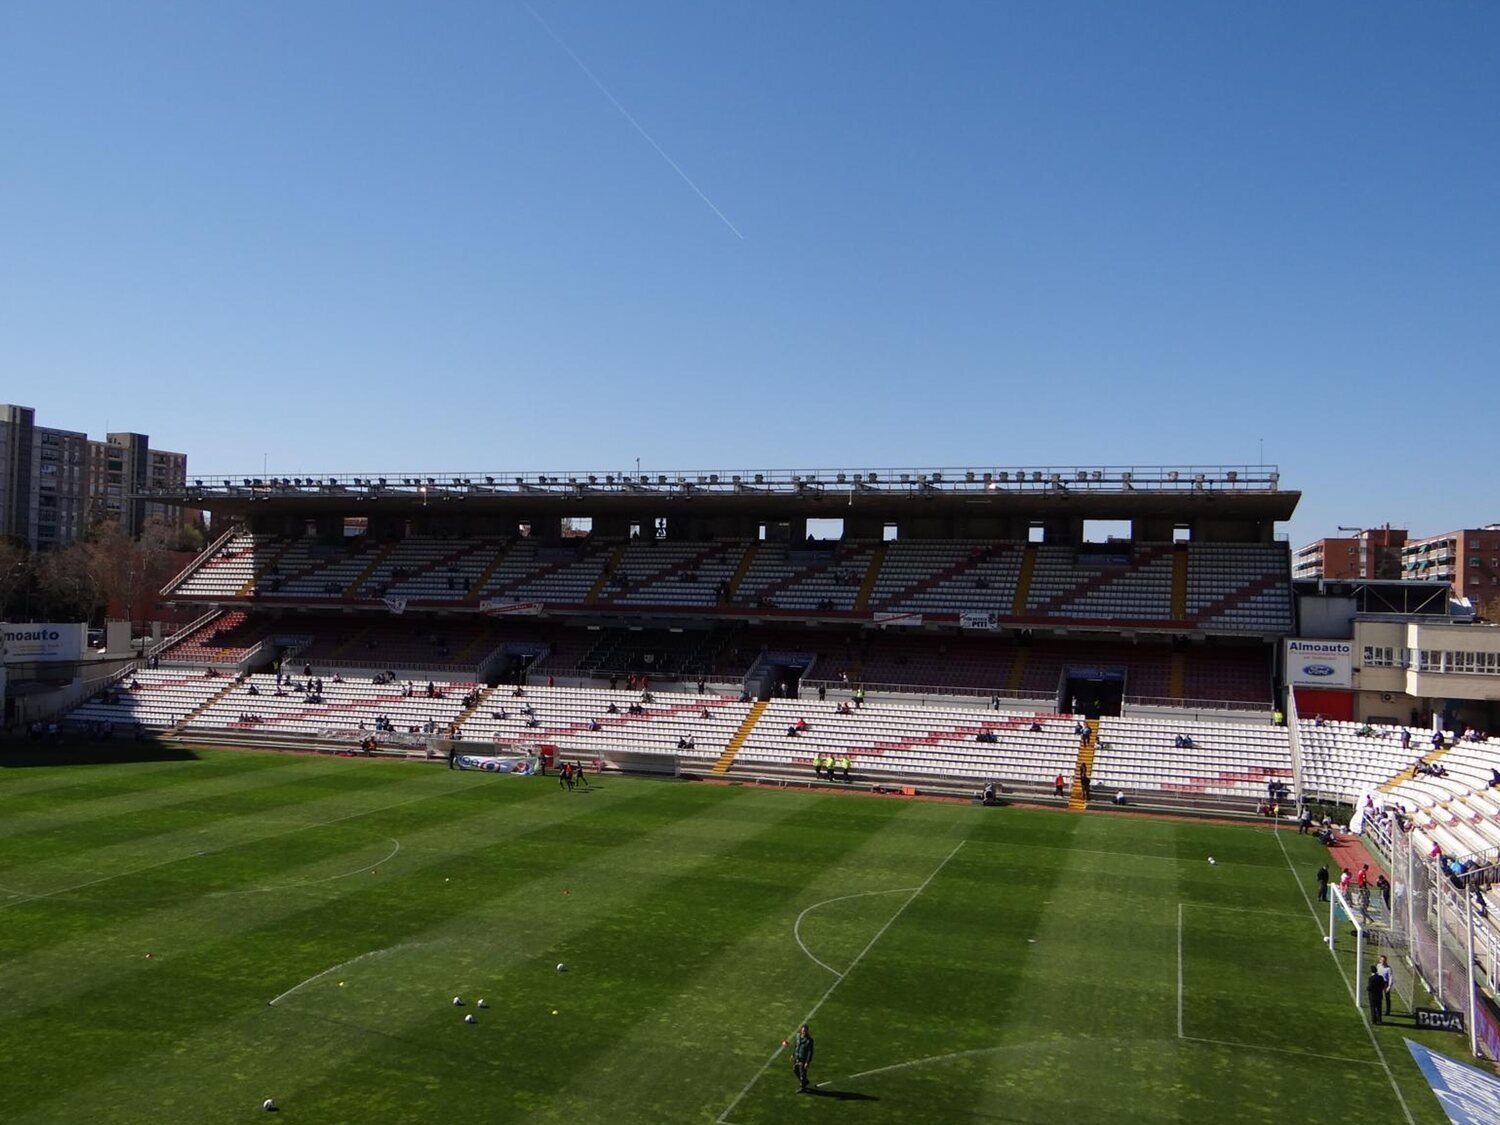 Polémica por el plan de Ayuso para trasladar el estadio del Rayo Vallecano fuera del barrio: las opciones